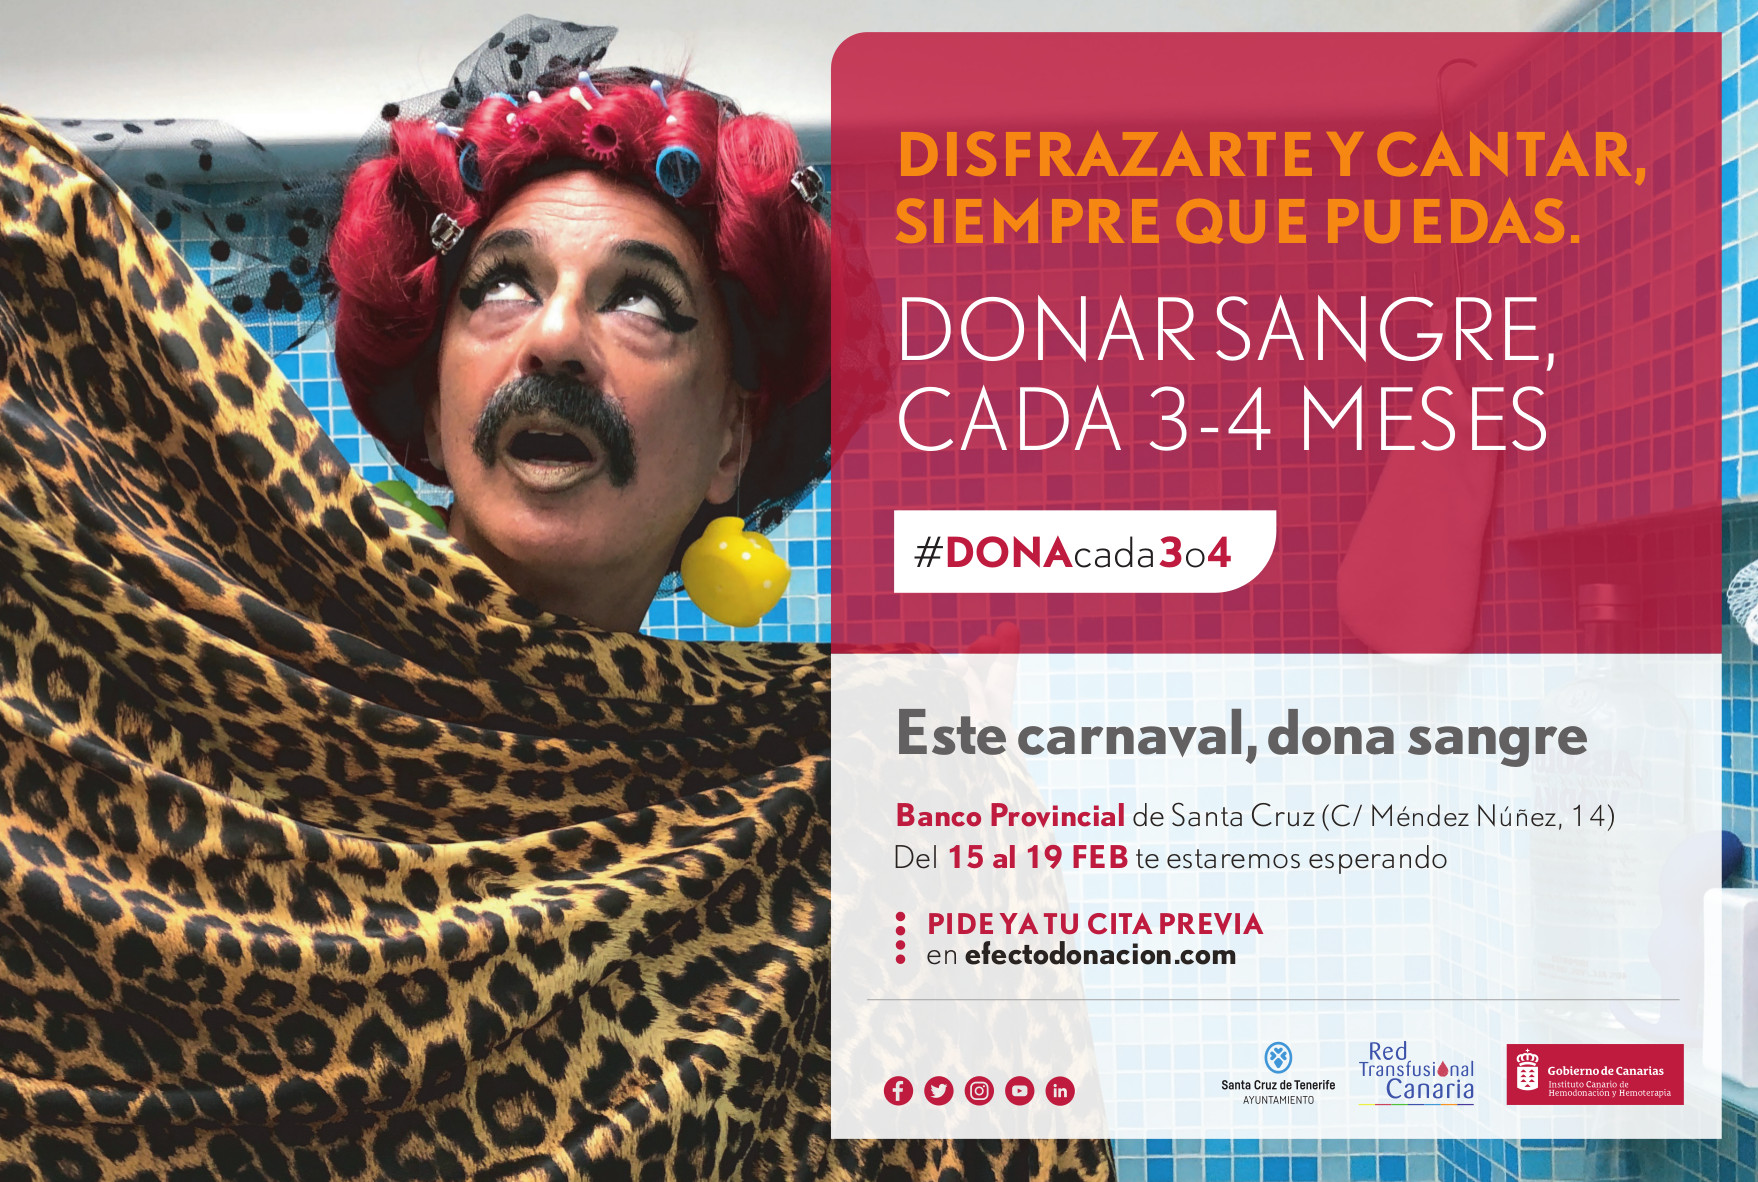 El ICHH y el Ayuntamiento de Santa Cruz de Tenerife colaboran en una campaña con la comunidad carnavalera